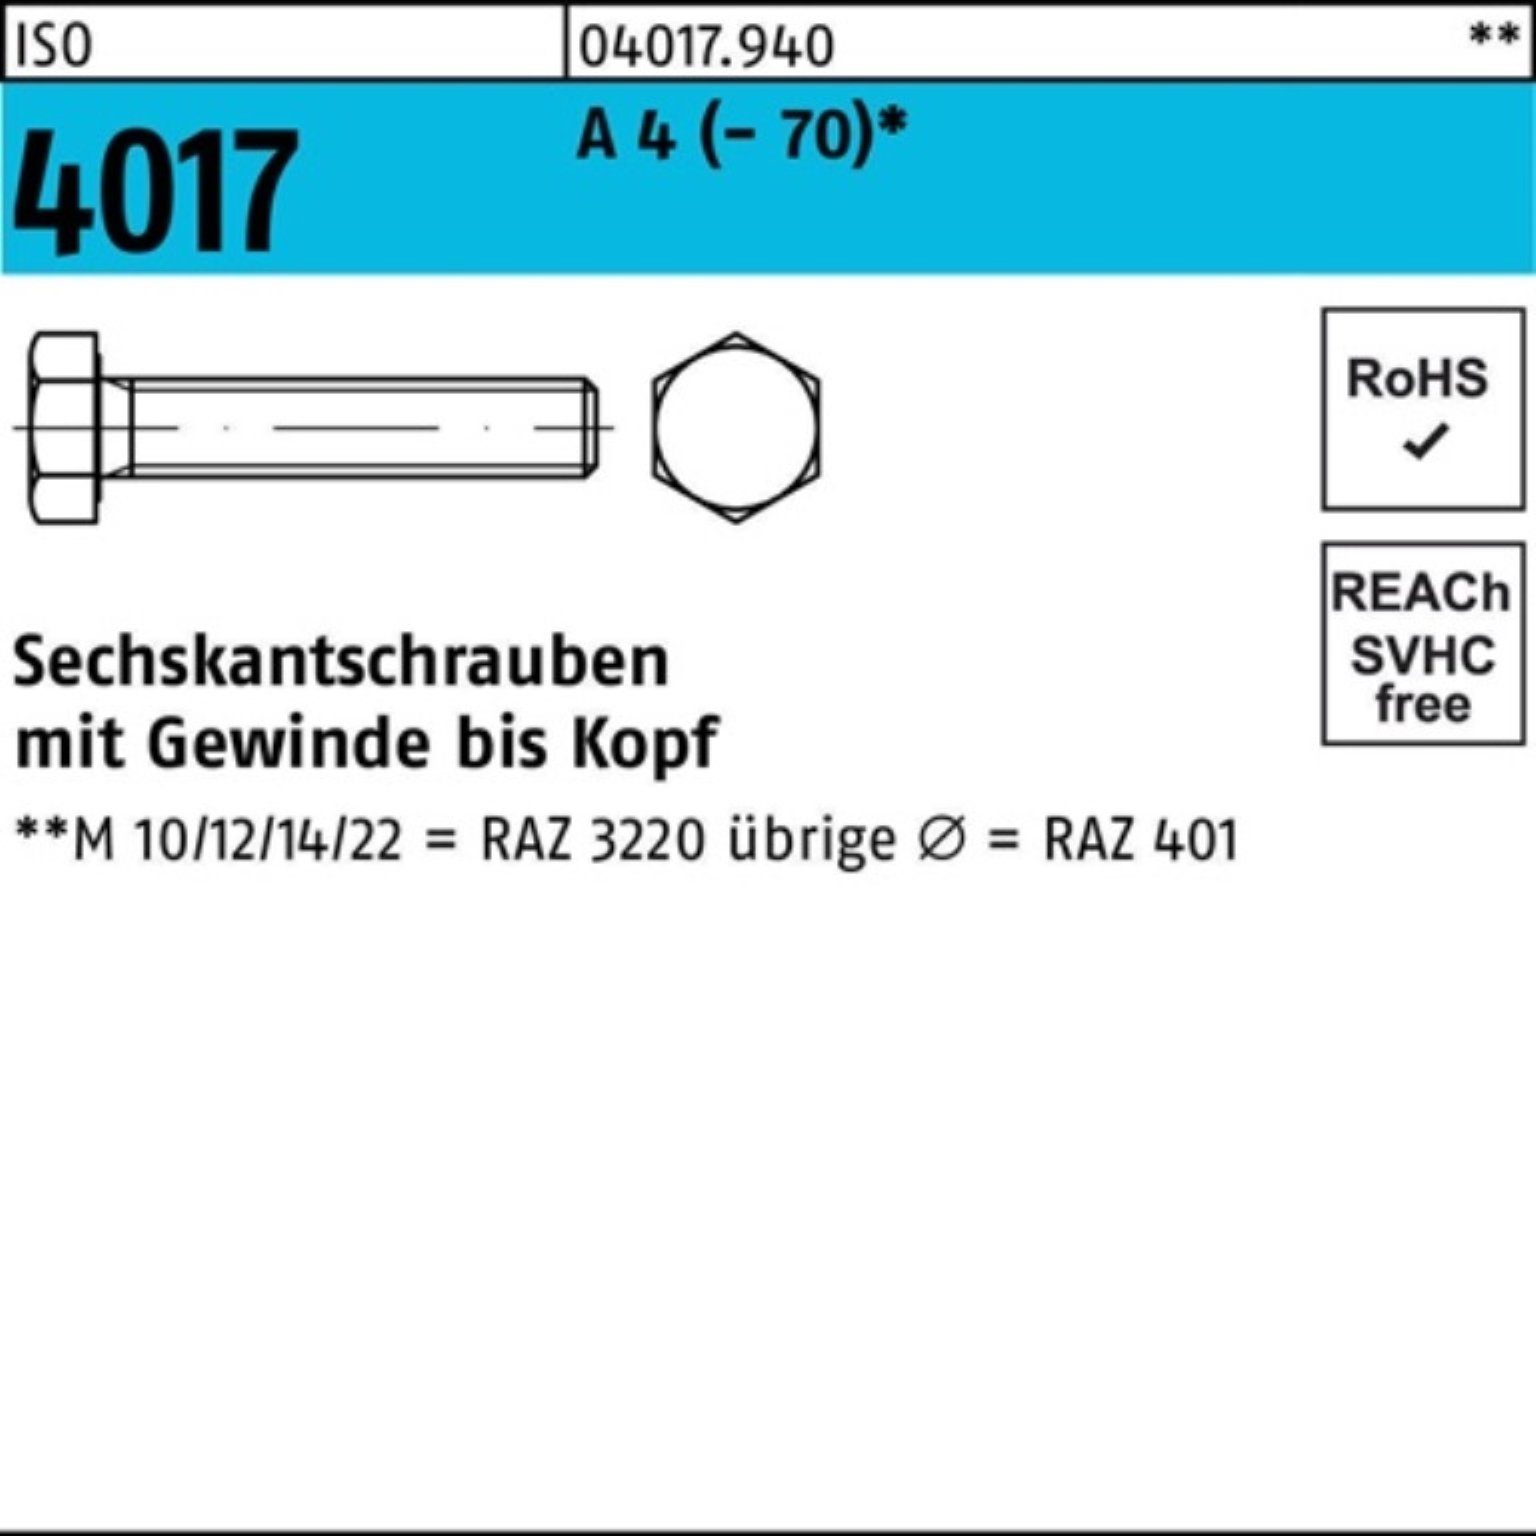 Bufab Sechskantschraube 100er Pack Sechskantschraube ISO 4017 VG M16x 50 A 4 (70) 50 Stück